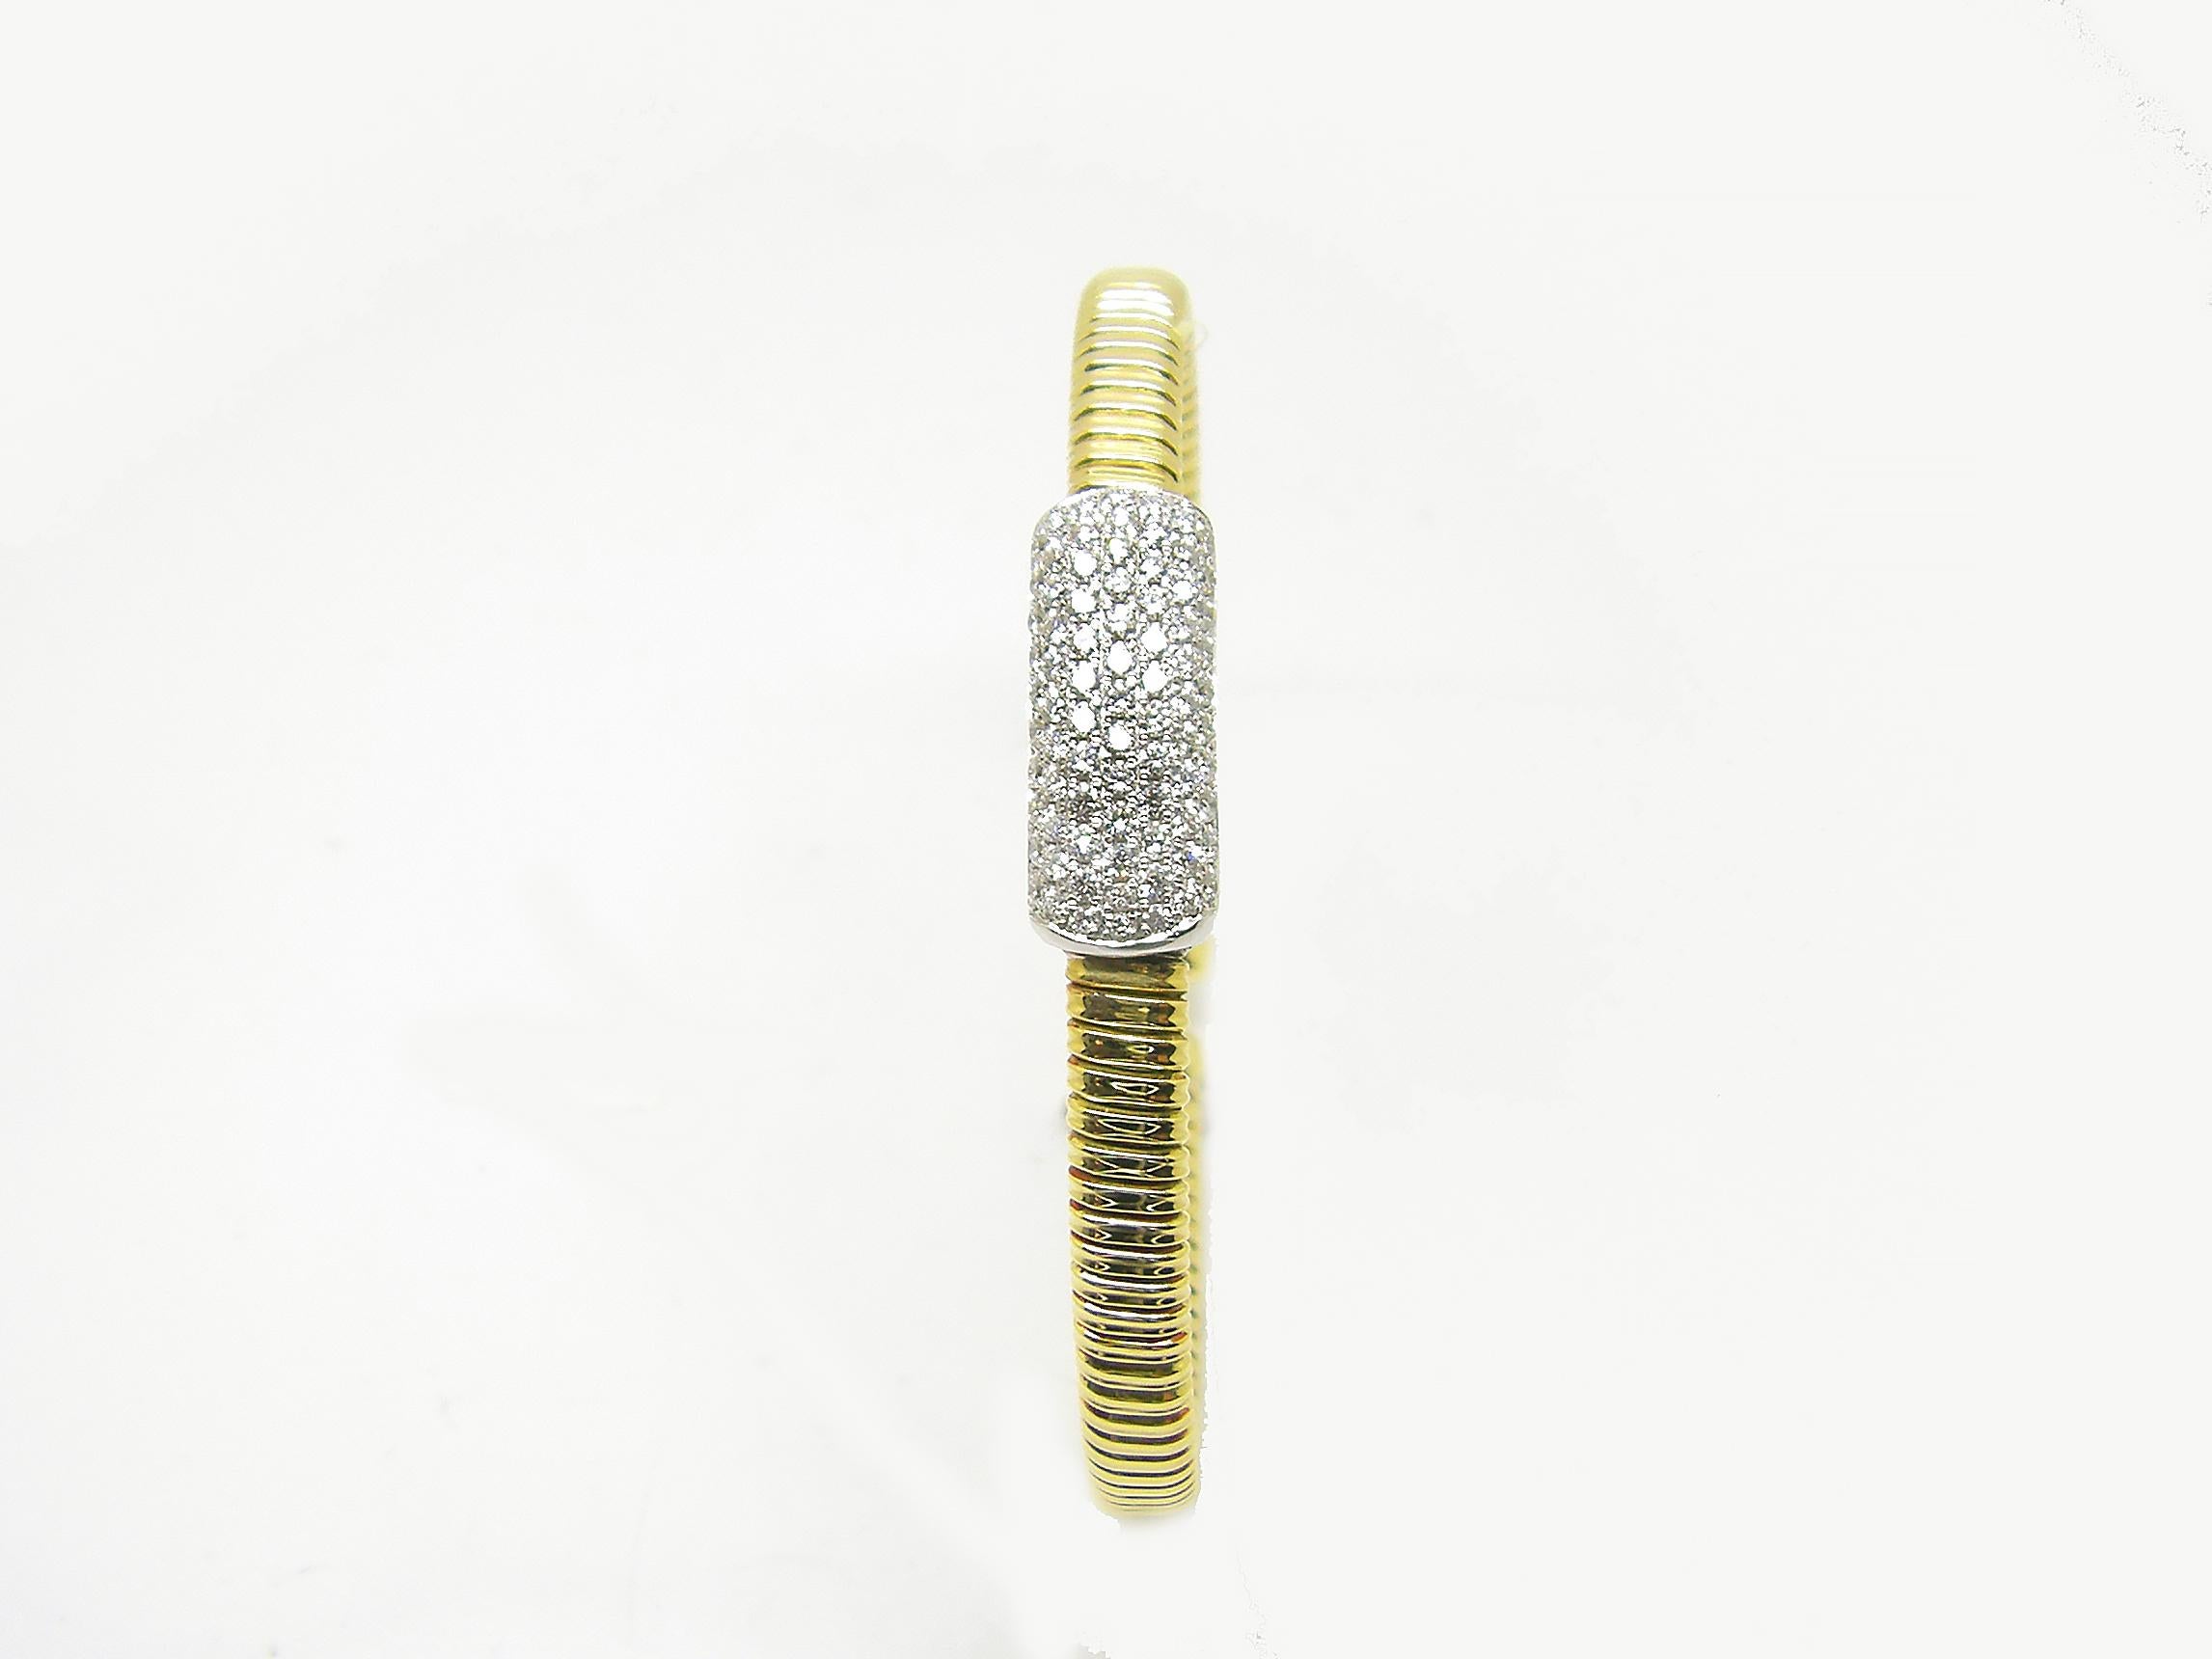 S.Georgios Designer dünnen Armreif Manschette Armband ist benutzerdefinierte aus Gelb-und Weißgold 18 Karat. Die wunderschöne Manschette hat weiße Diamanten im Brillantschliff mit einem Gesamtgewicht von 0,80 Karat, die mikroskopisch auf einem